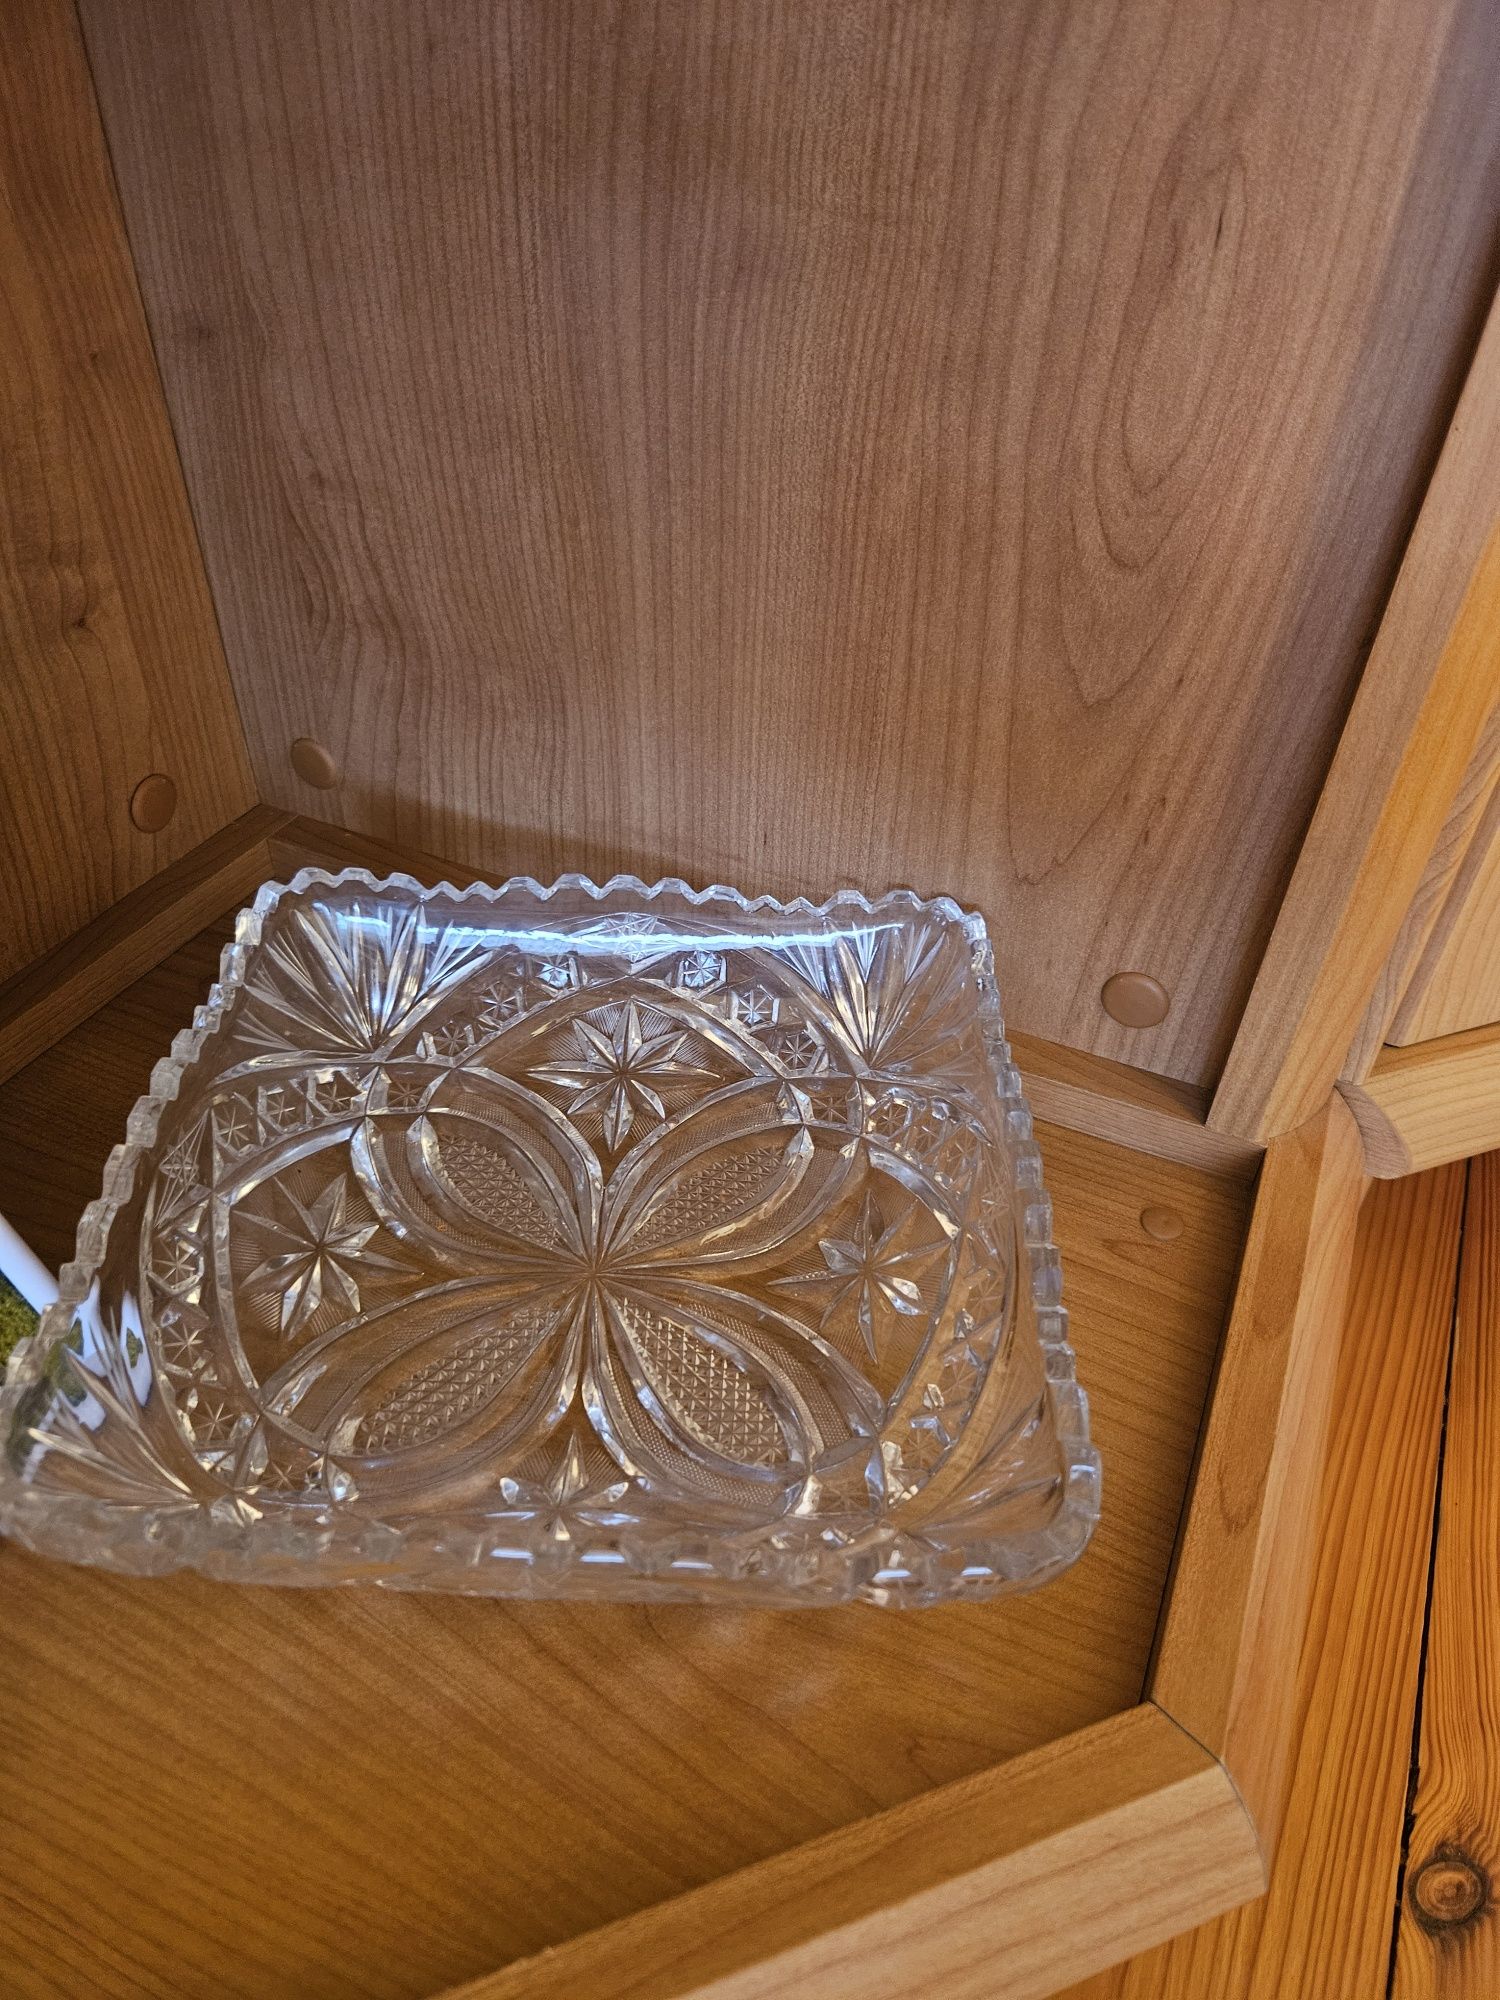 Kryształy duża ilość wazon kieliszki miski podstawki karafka